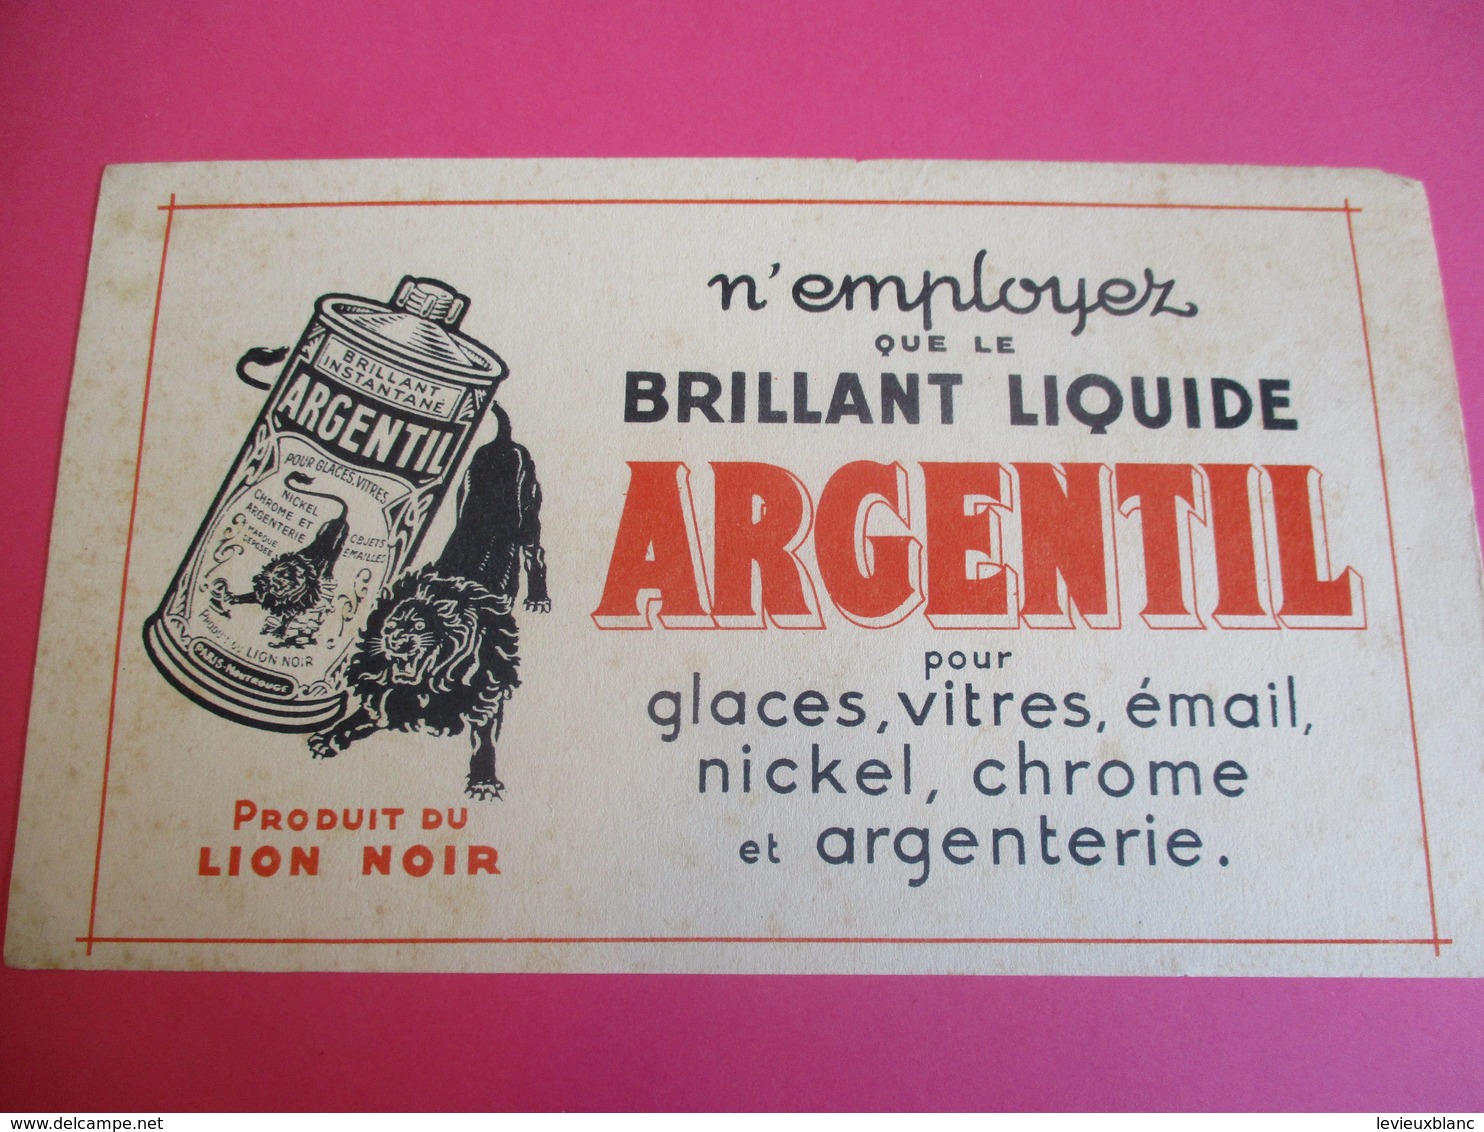 2 Buvards /Nickel , Chrome Et Argenterie/ ARGENTIL/ Produit Du LION NOIR / Brillant Liquide/ Vers 1940-1960    BUV328 - Pulizia